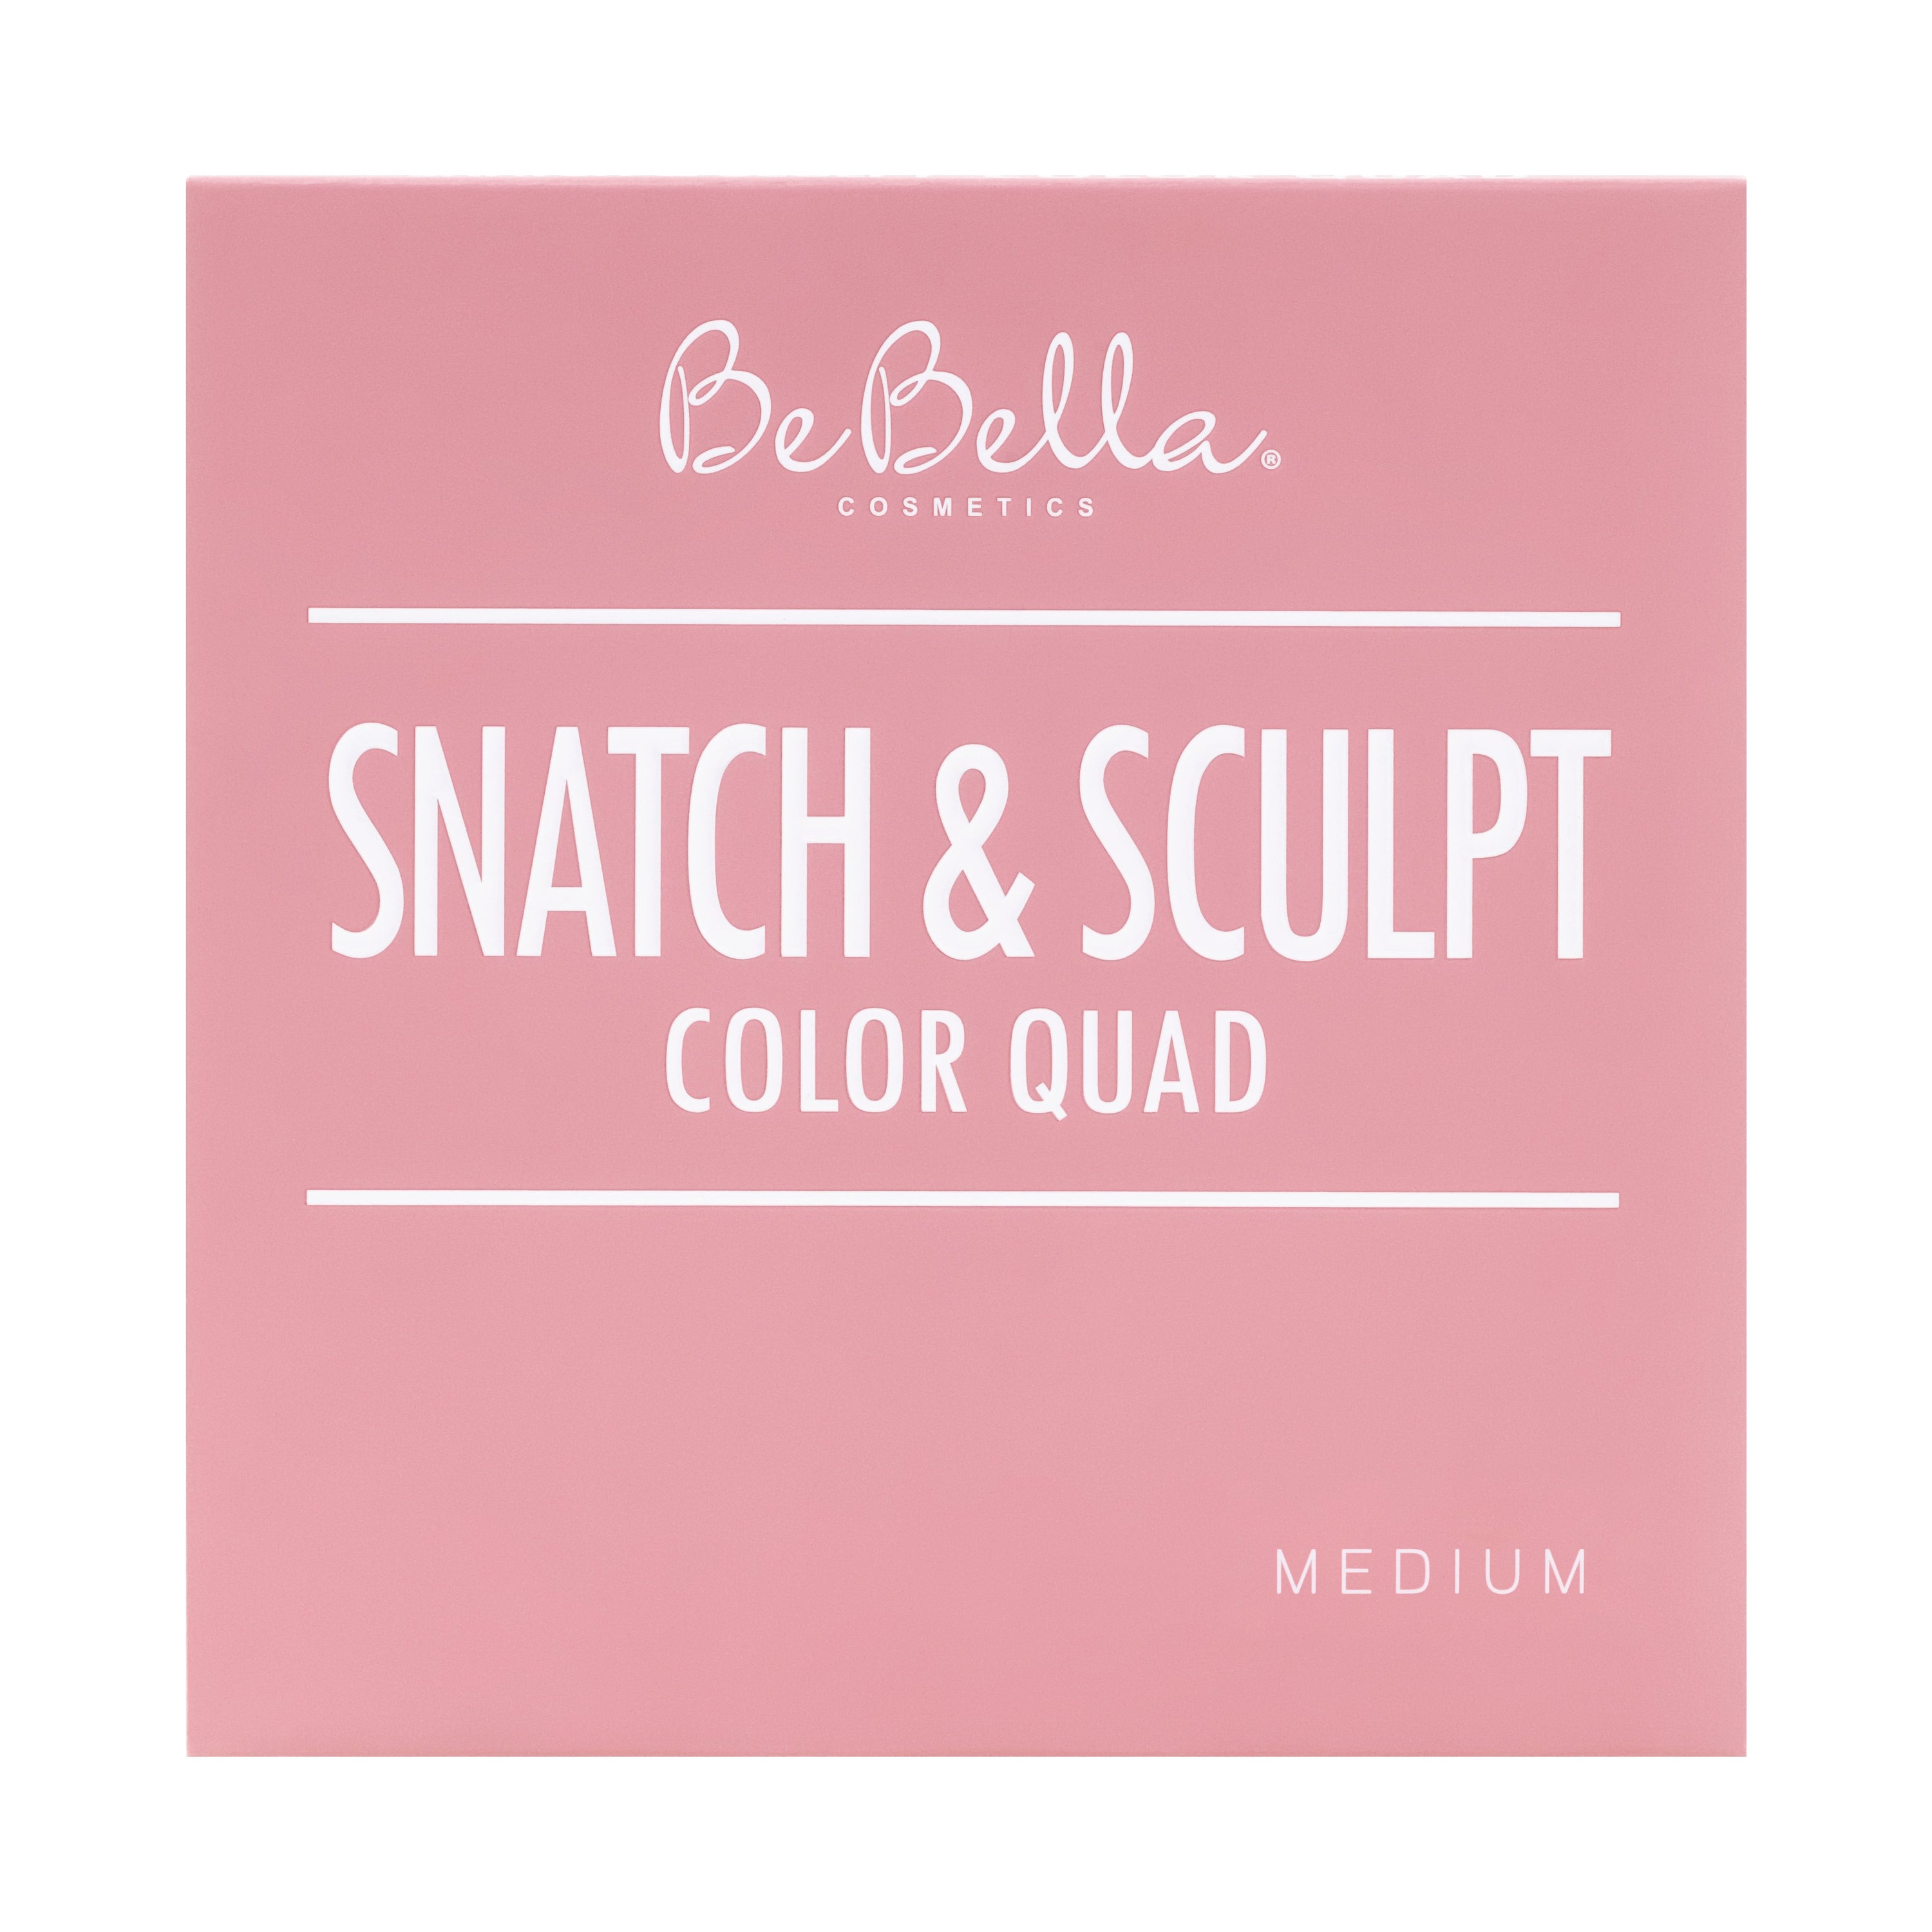 BeBella Cosmetics - Snatch & Sculpt Color Quad Palette Medium